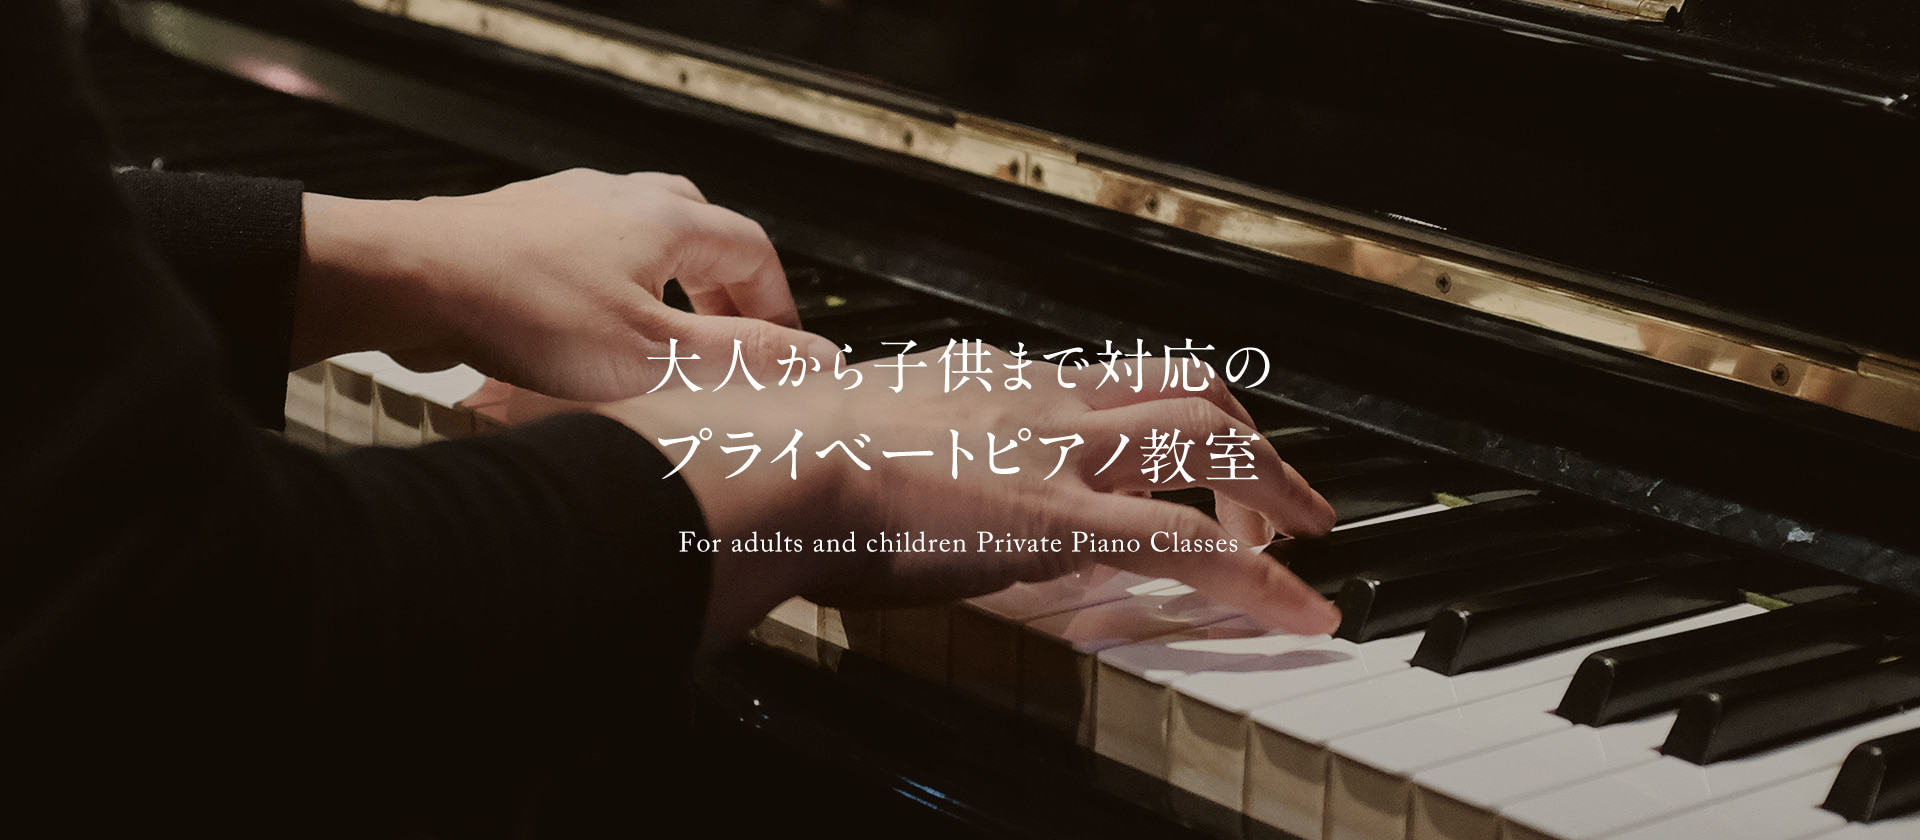 大人から子供まで対応のプライベートピアノ教室